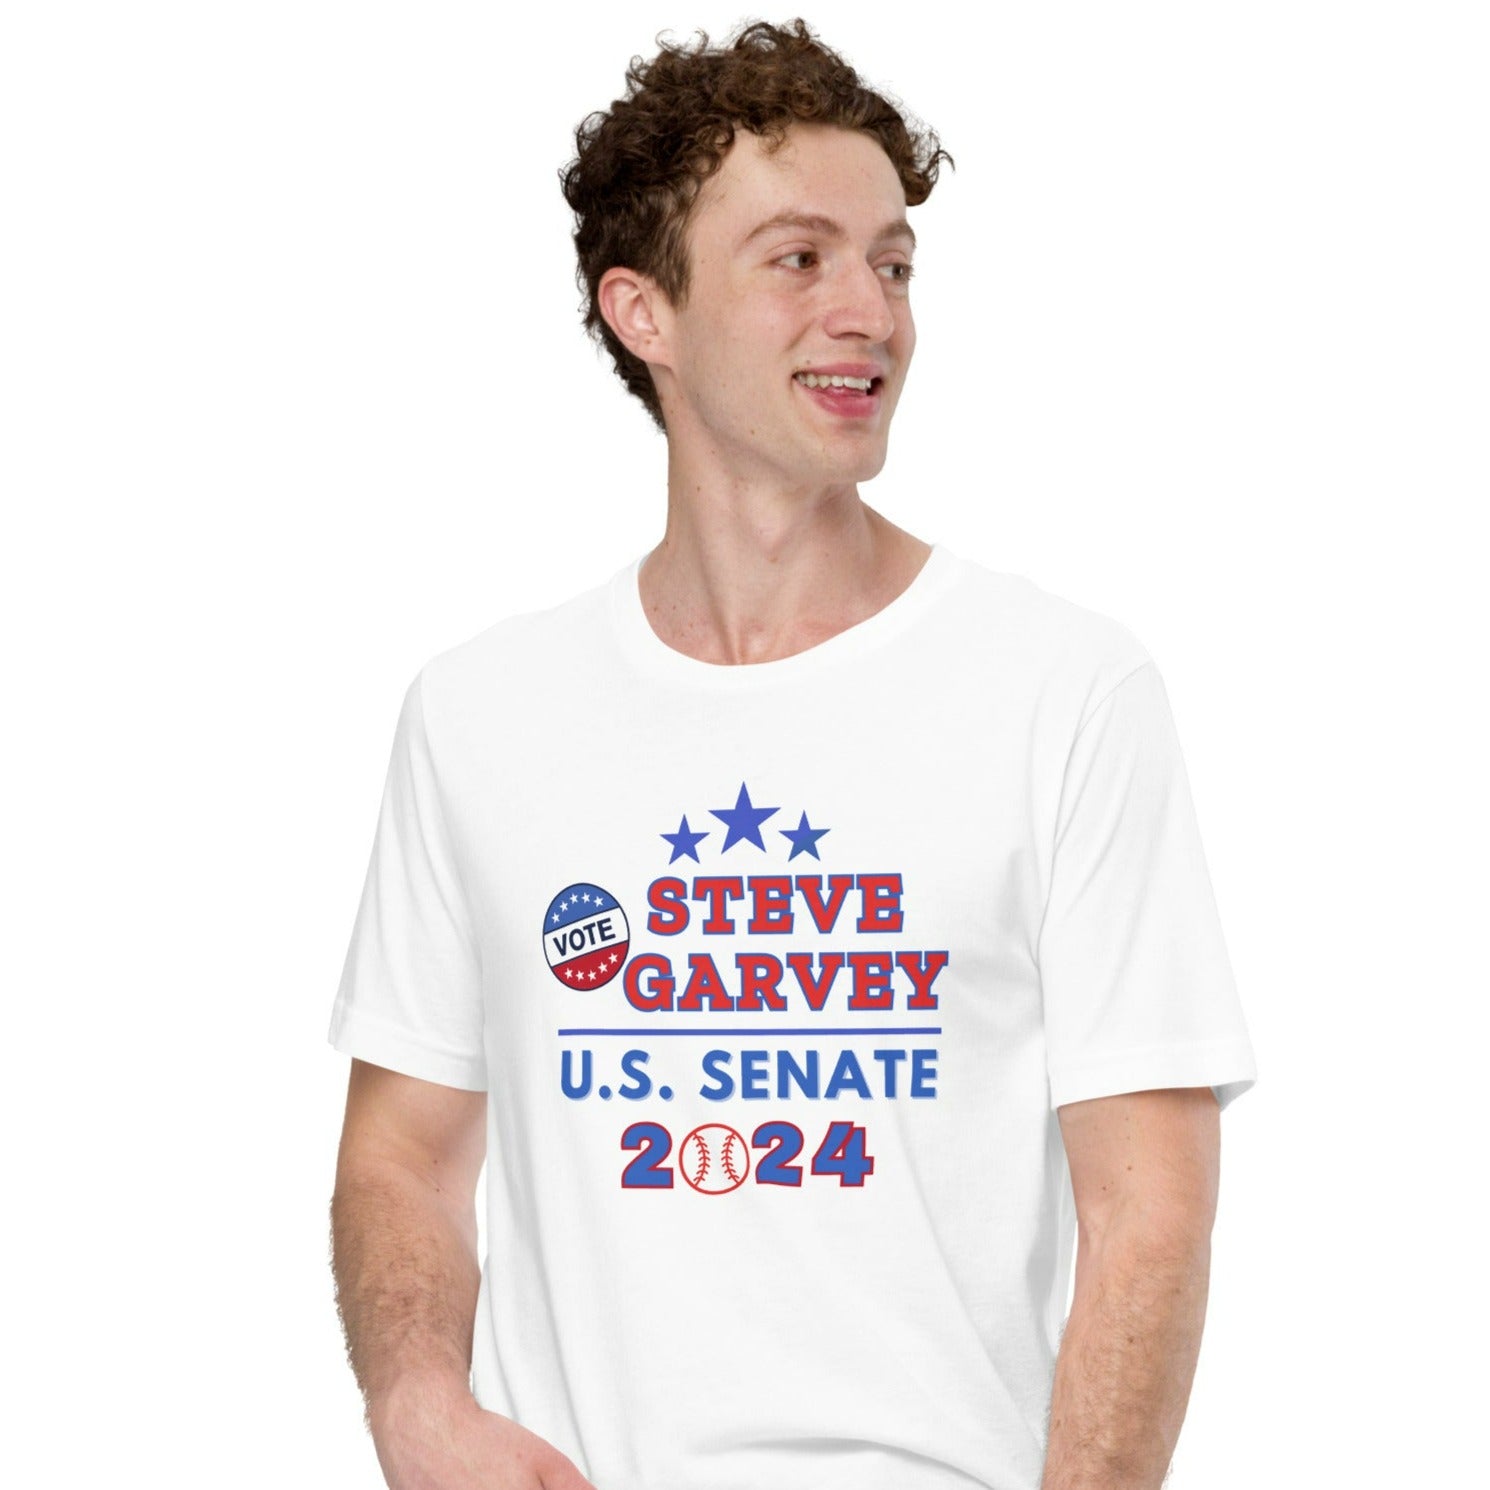 Steve Garvey U.S. Senate T-Shirt